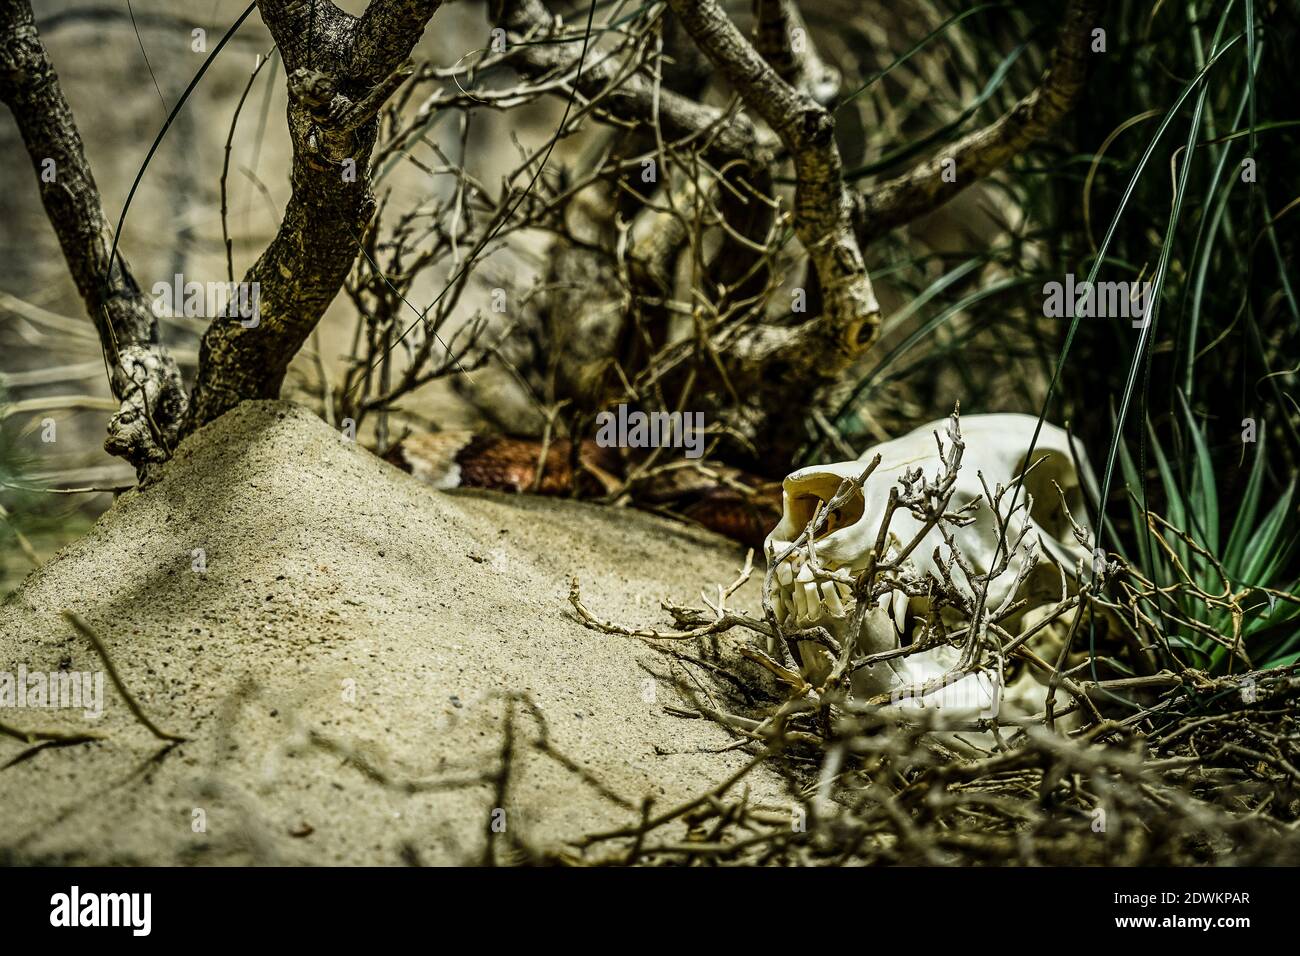 Schädel liegt halb versteckt unter Sträuchern in einer Wüstenumgebung Stockfoto